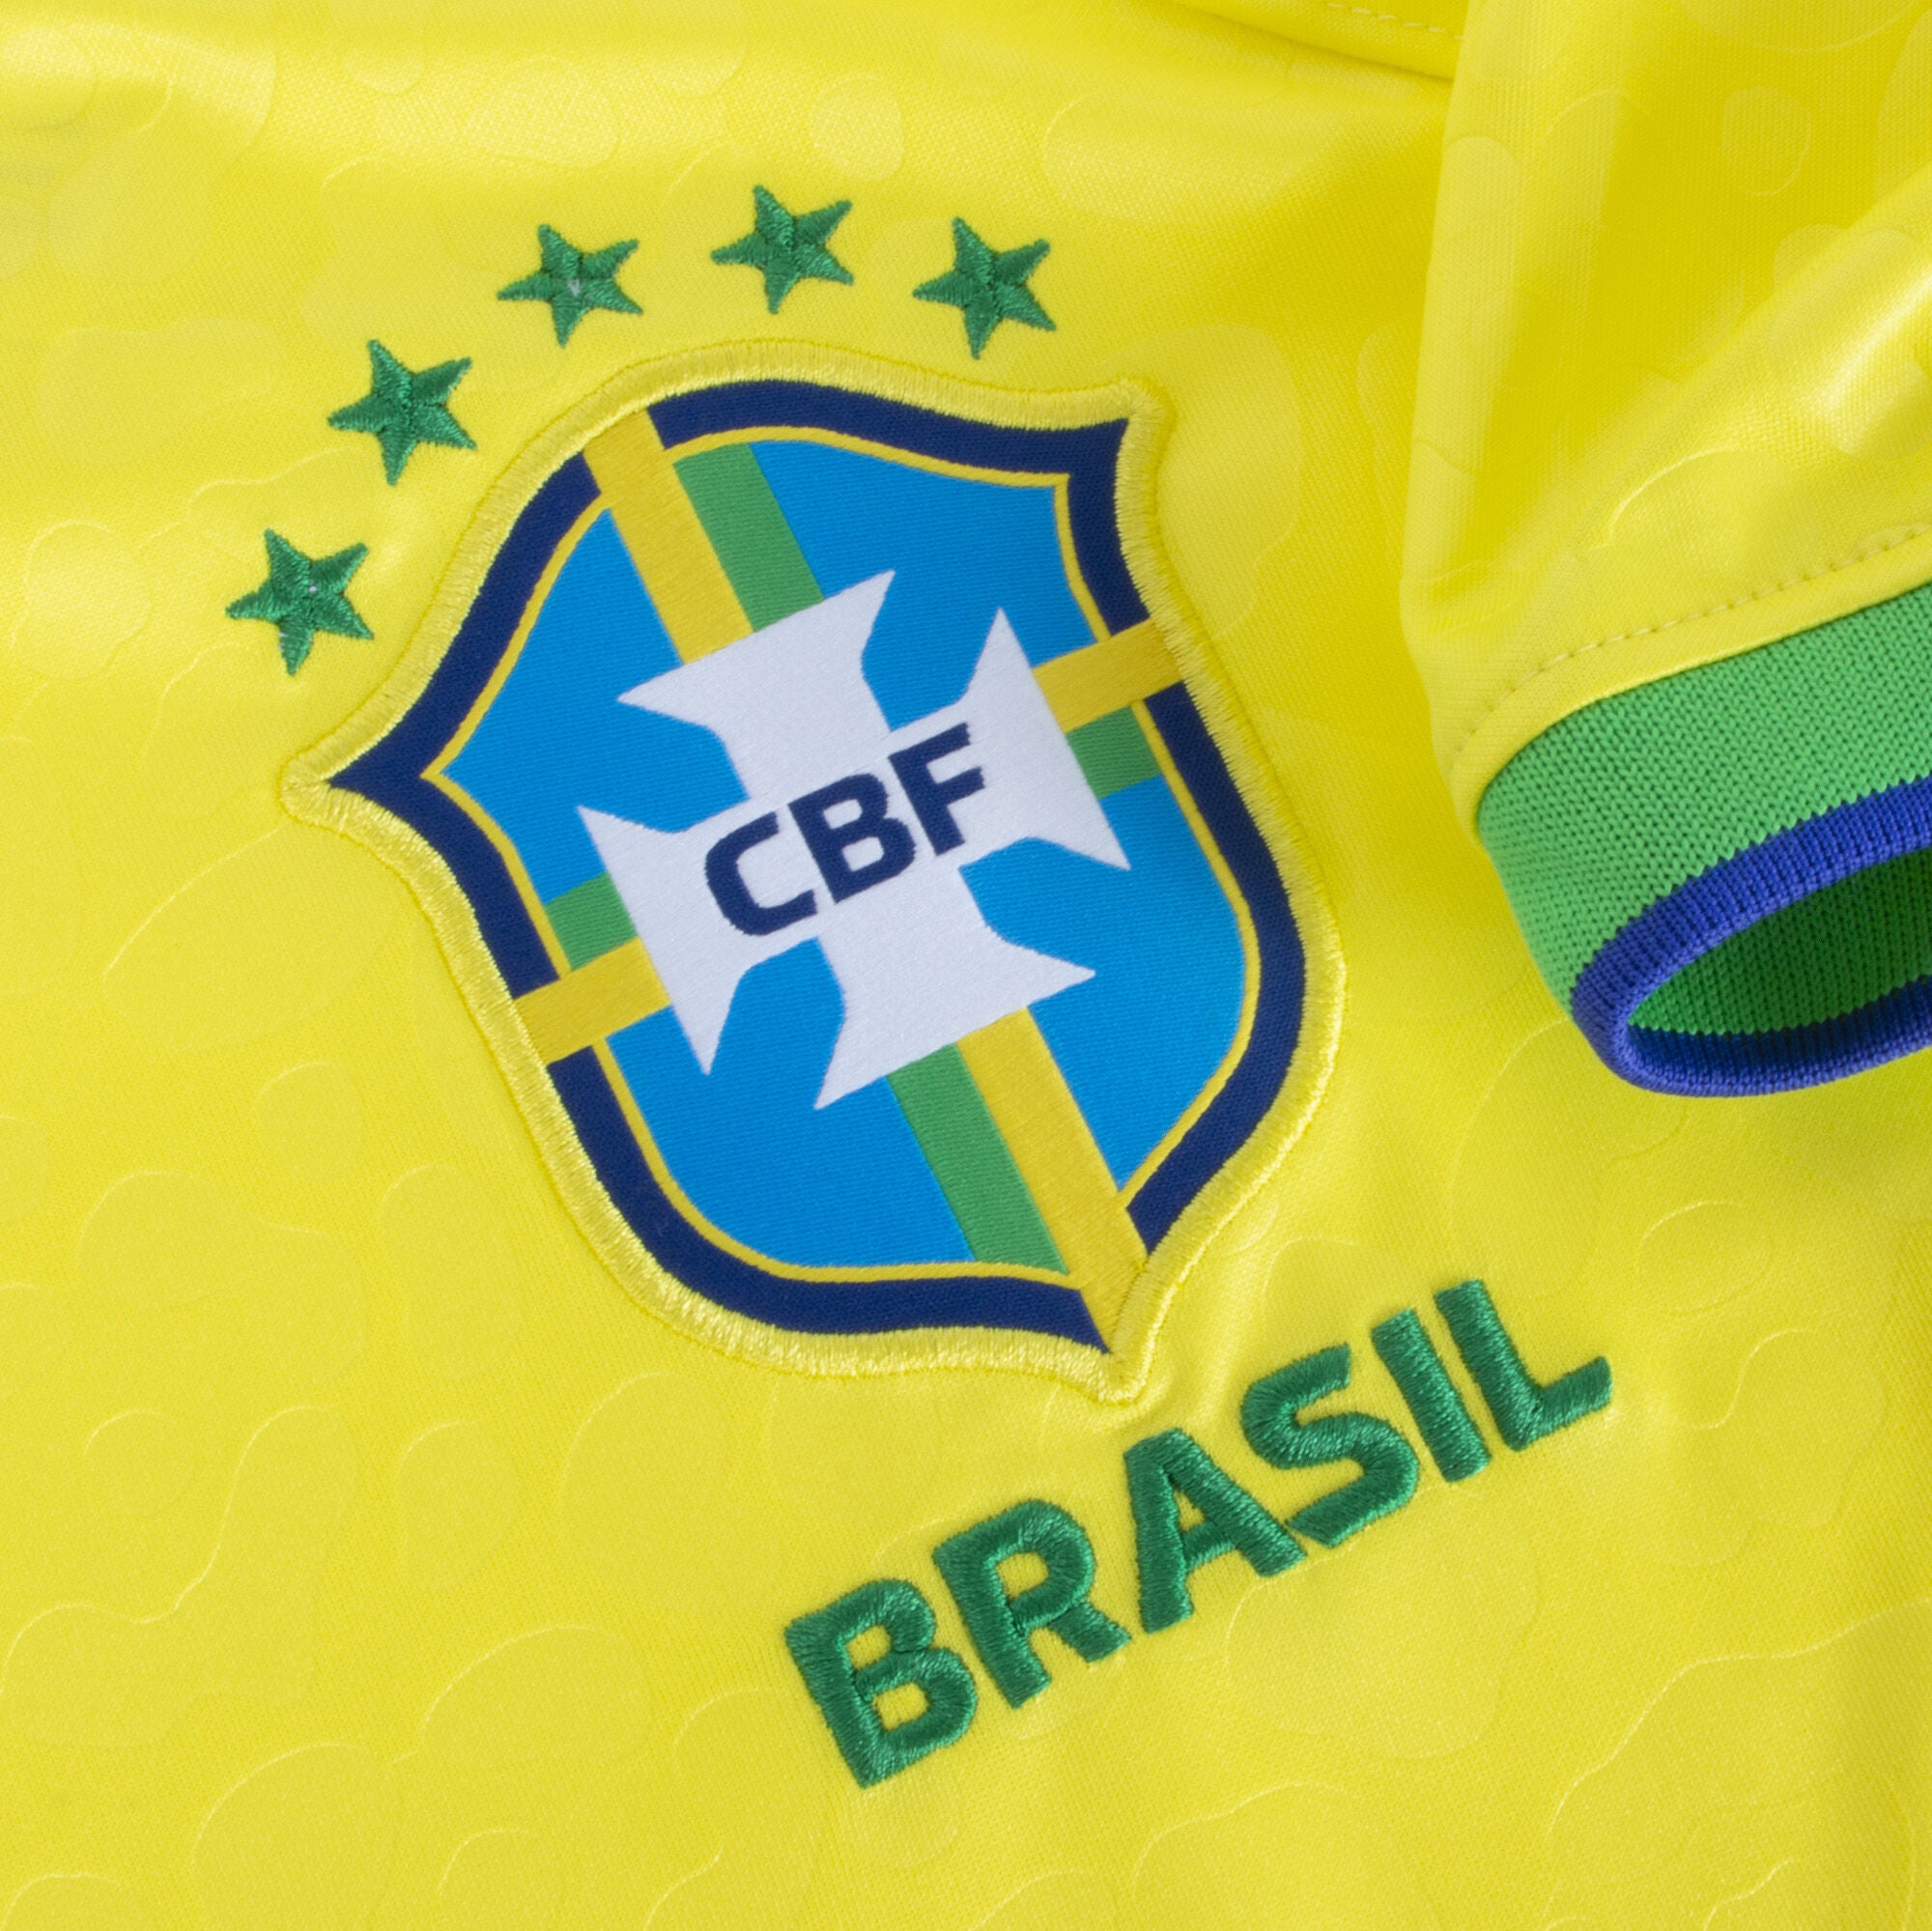 Nike Brazil Away Jersey 2022-2023